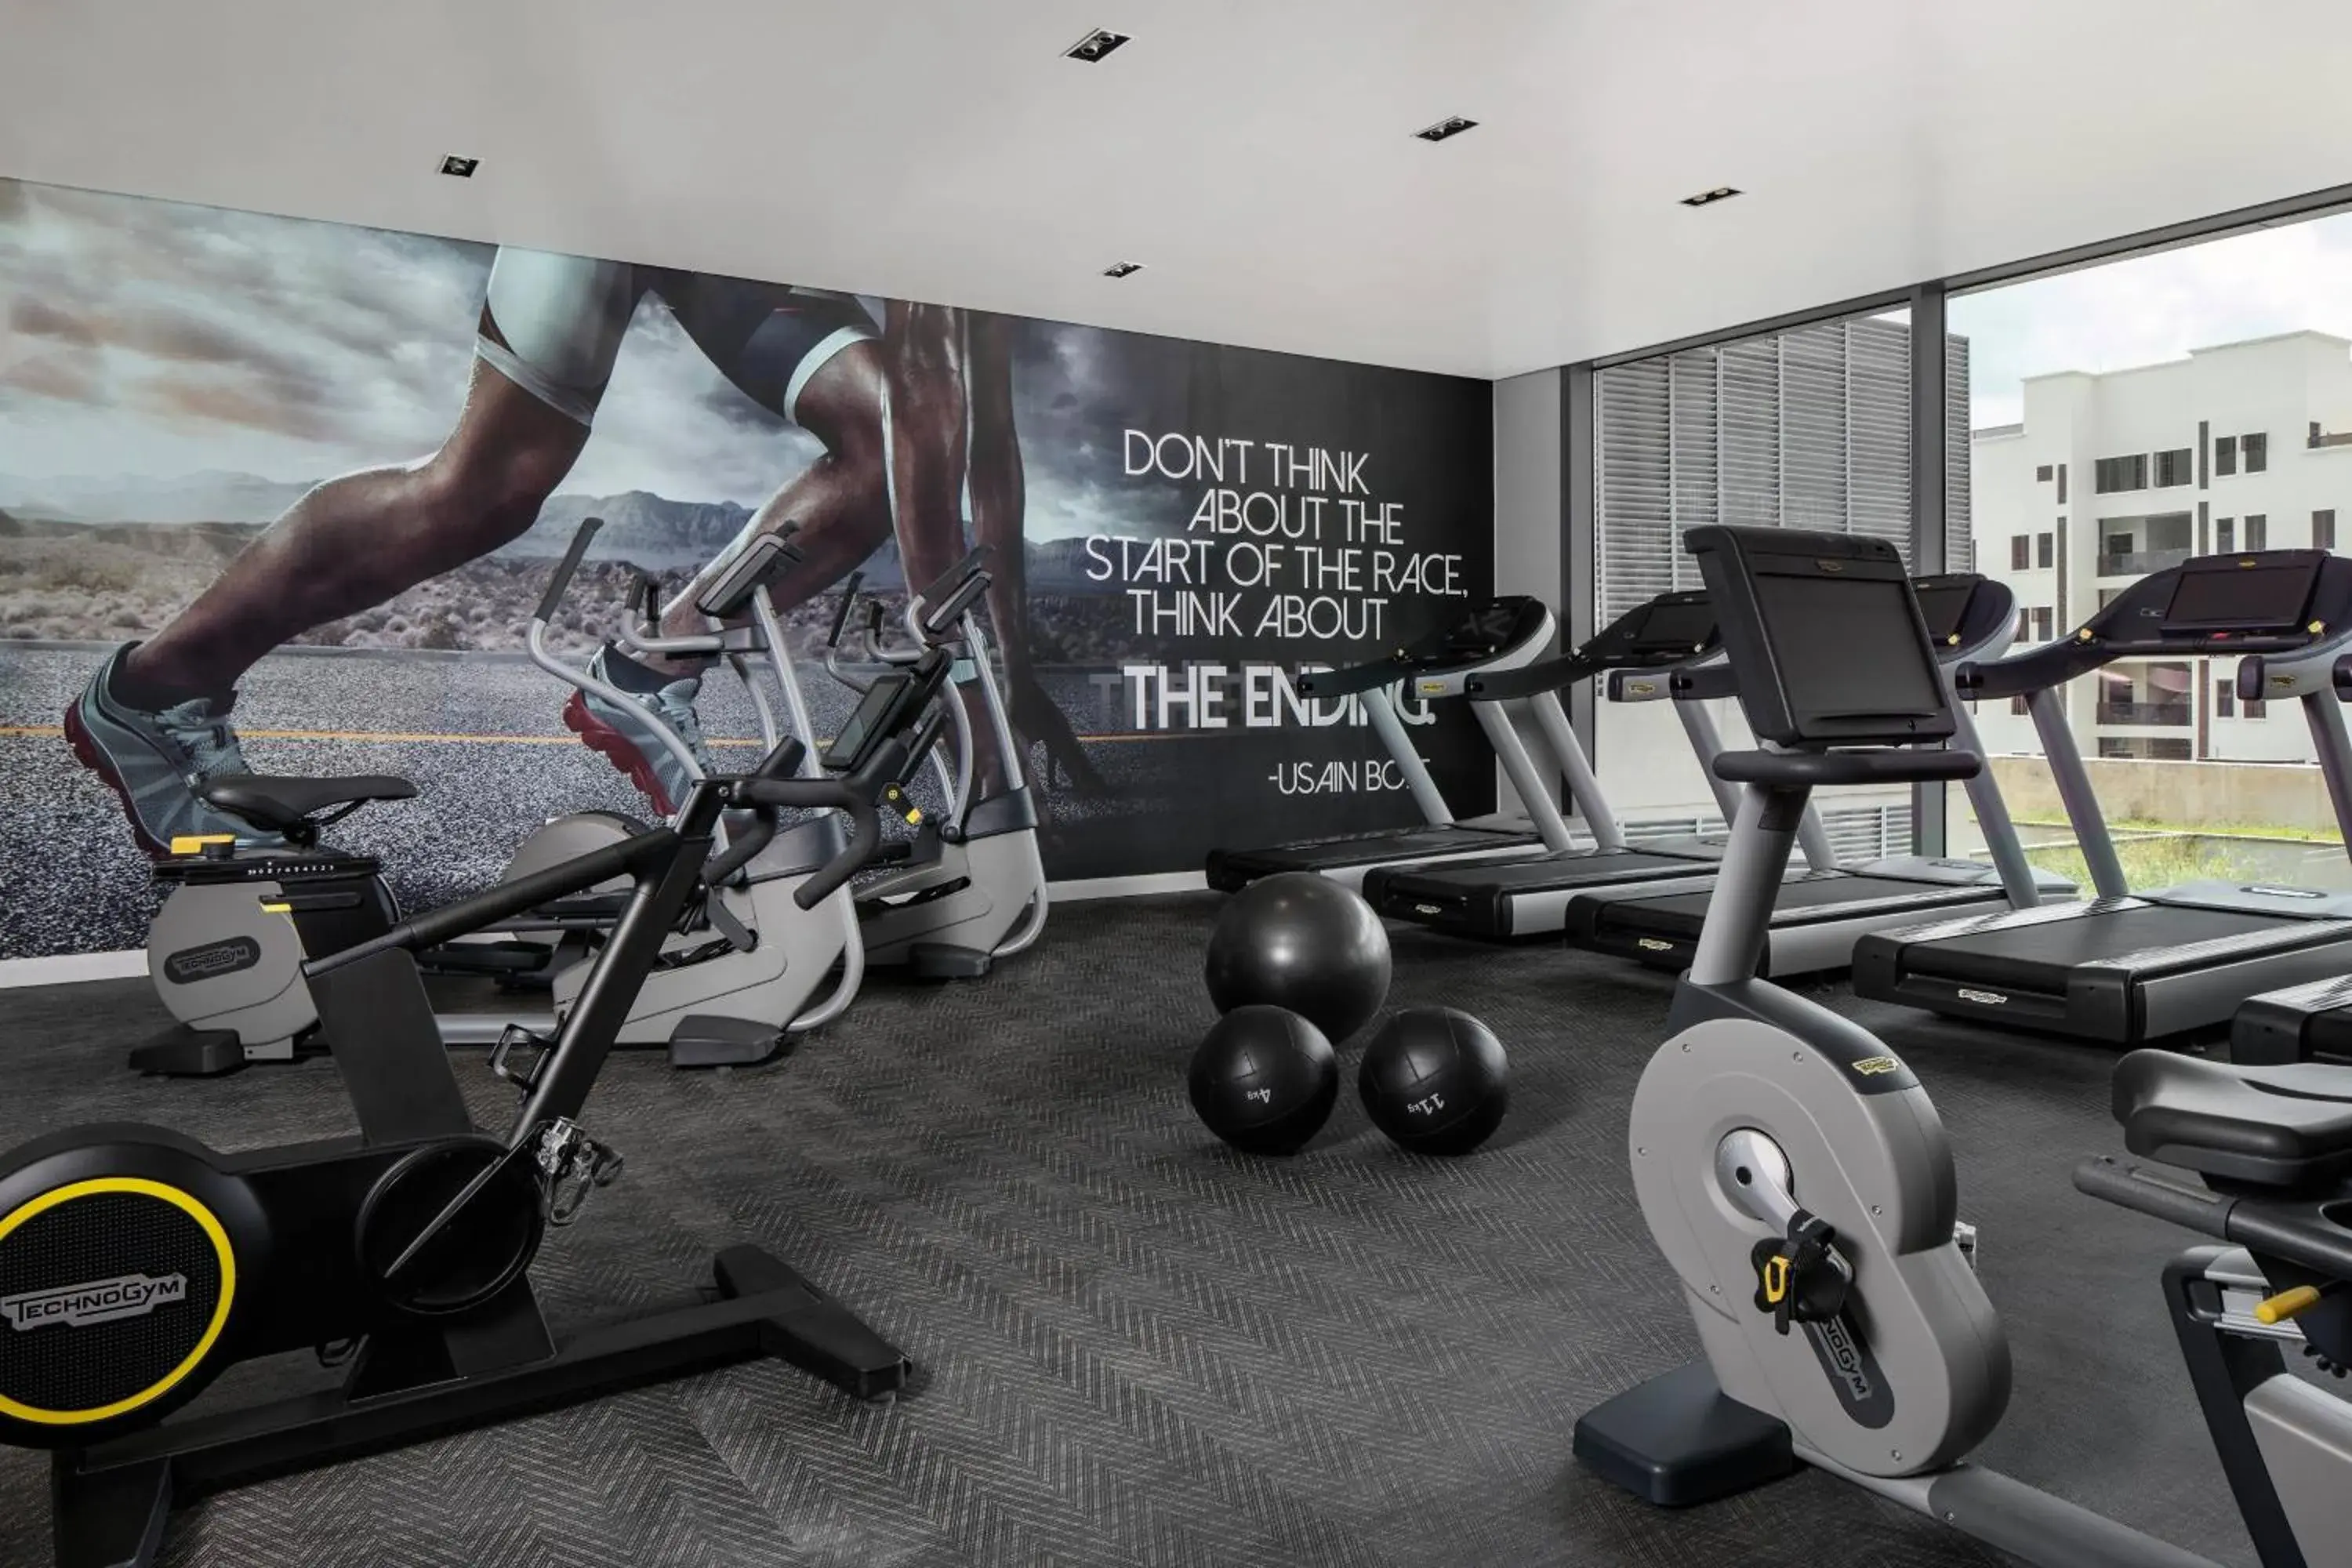 Fitness centre/facilities, Fitness Center/Facilities in Lagos Marriott Hotel Ikeja